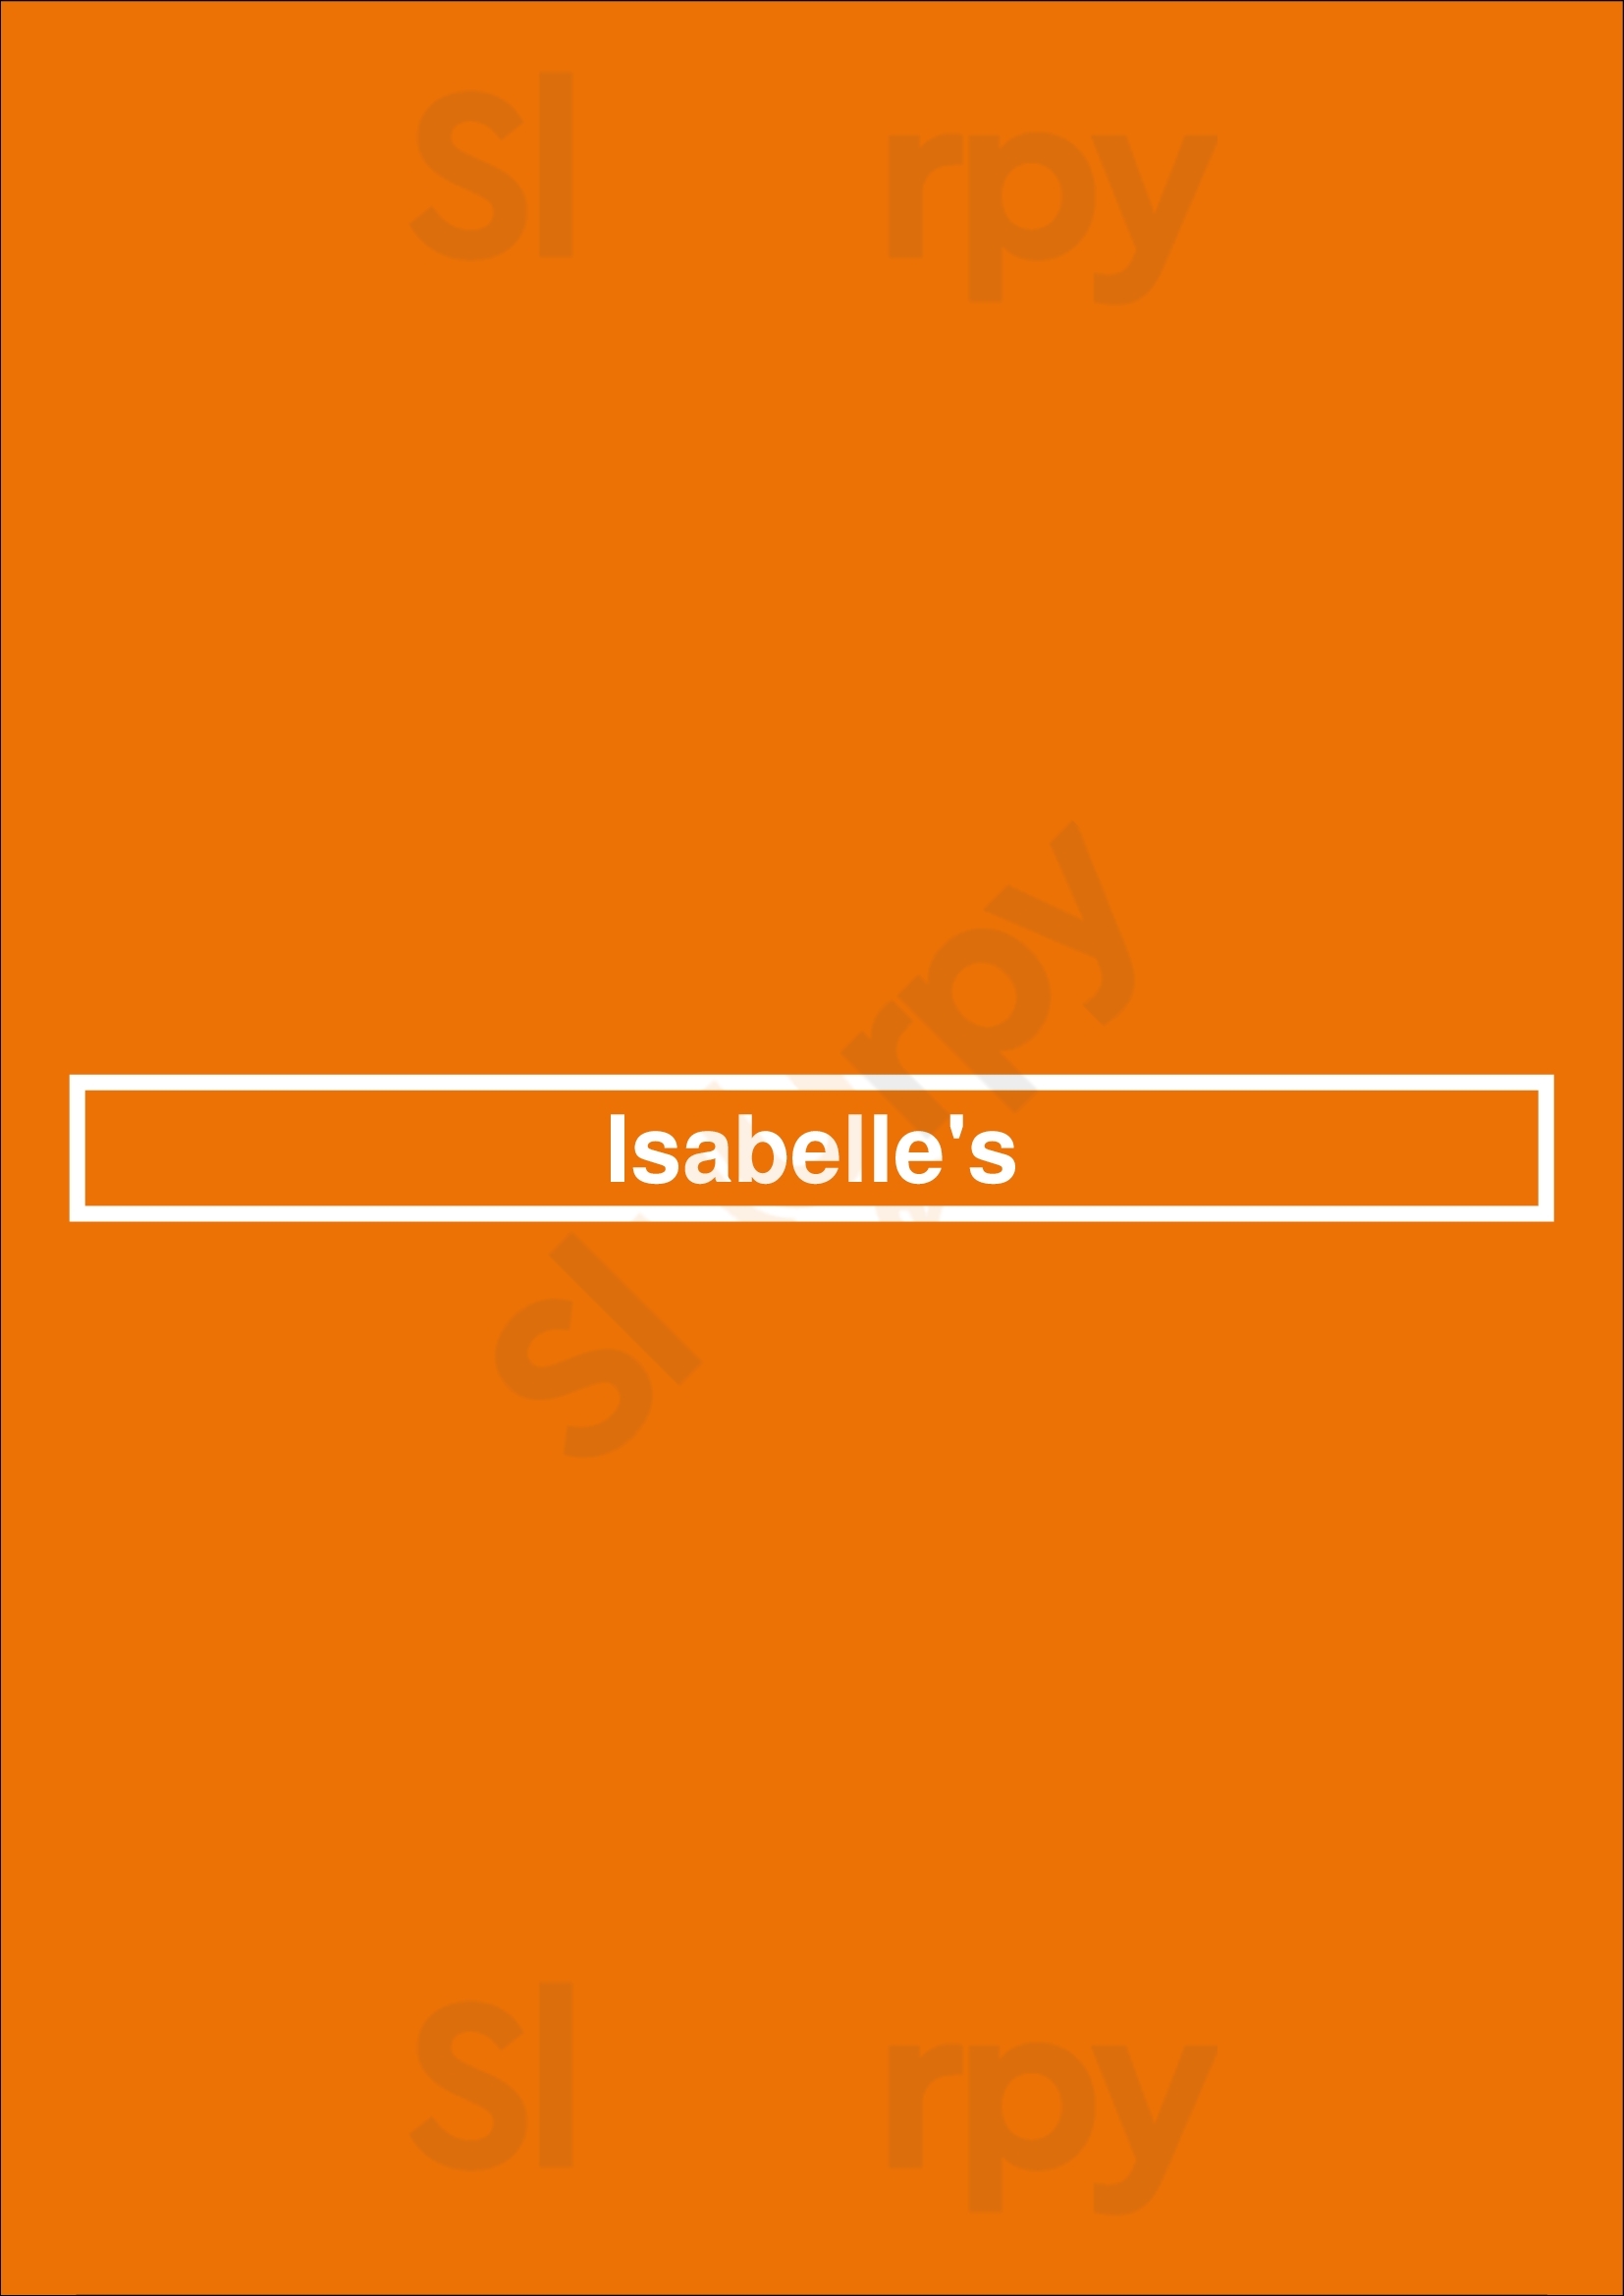 Isabelle's Dublin Menu - 1